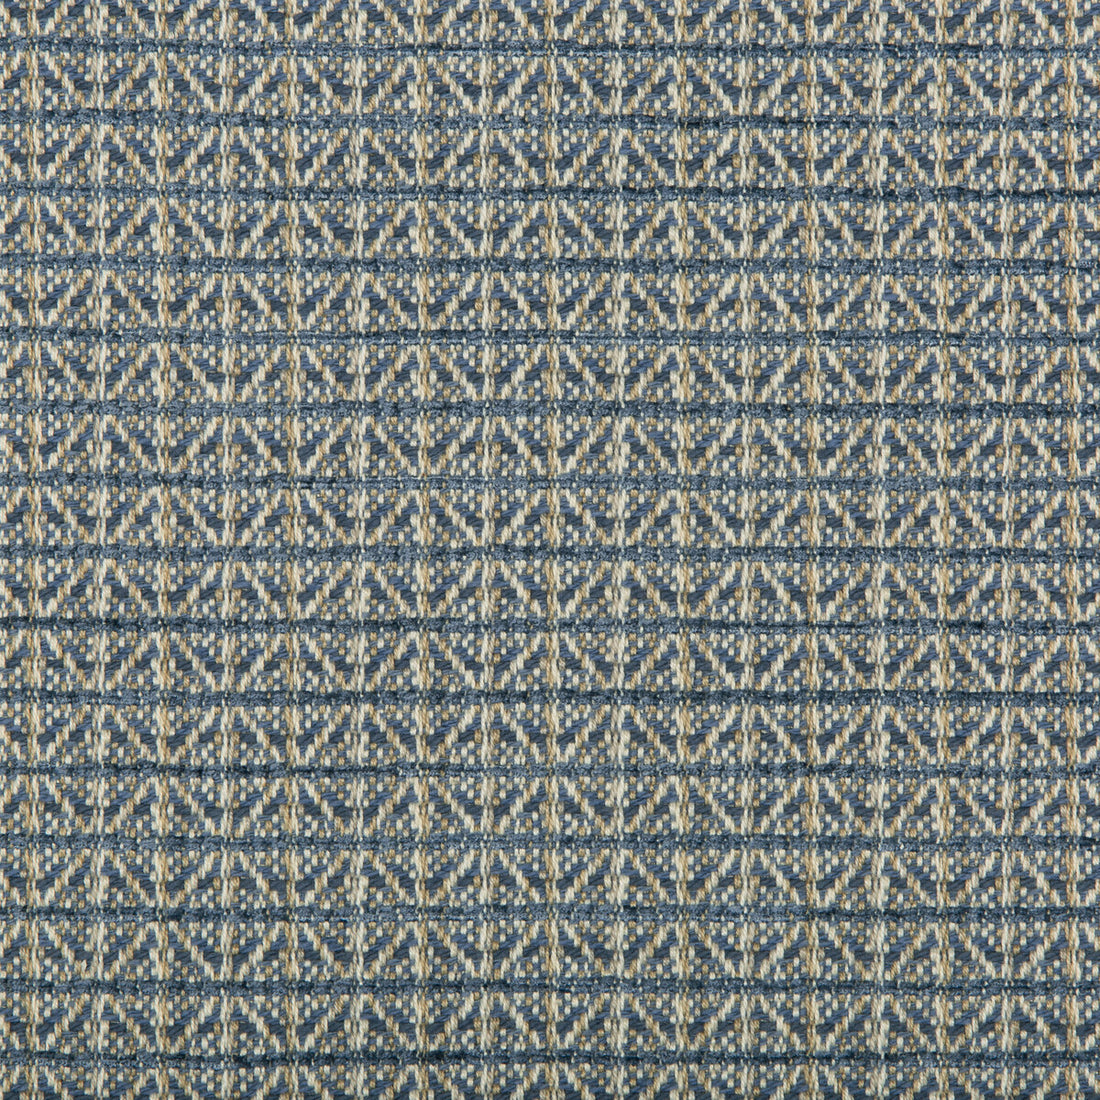 Kravet Design fabric in 35629-5 color - pattern 35629.5.0 - by Kravet Design